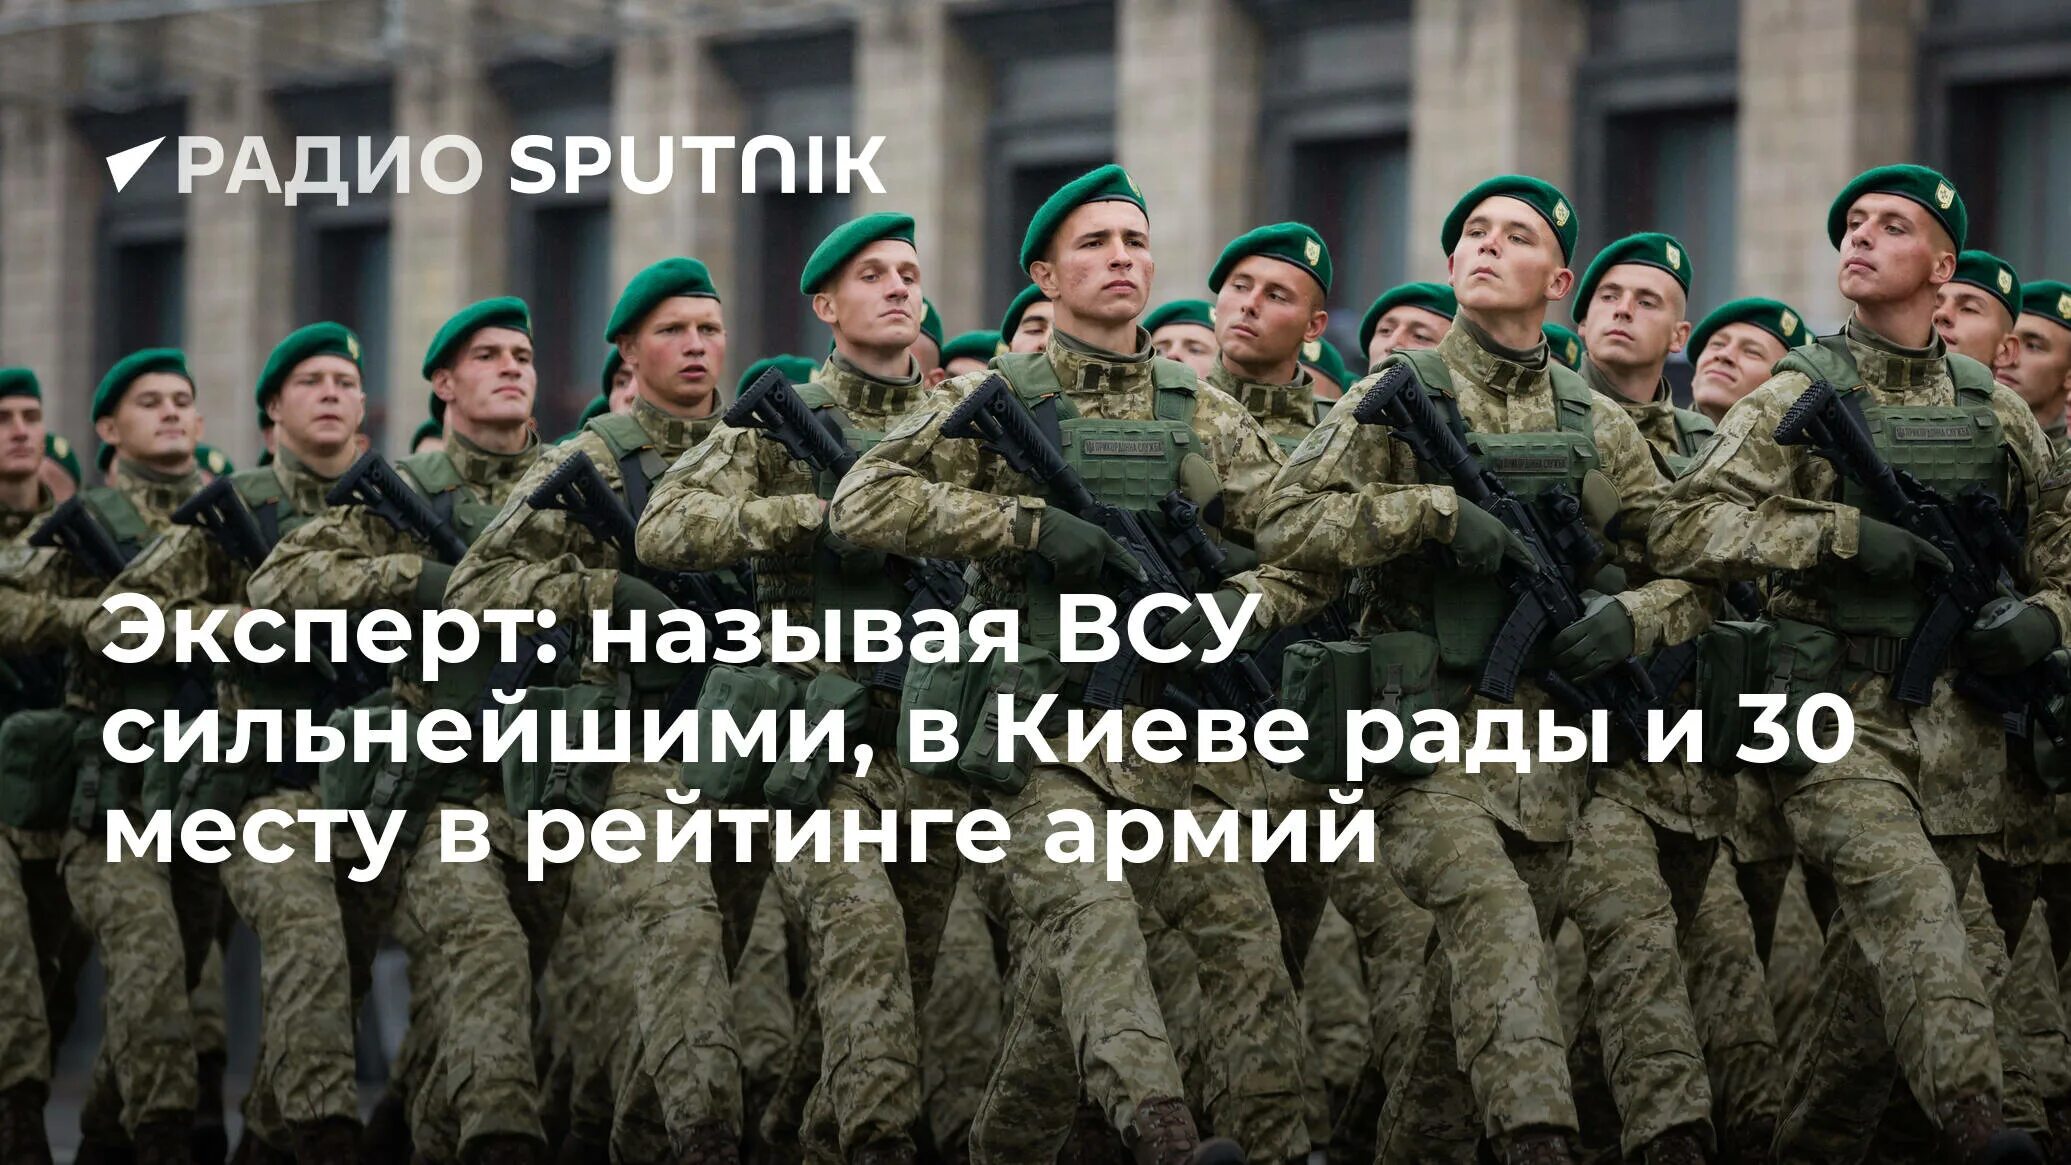 Сильная армия украины. Украинская армия самая сильная в мире. Место в рейтинге армия Украины. Украинская армия в рейтинге армий.